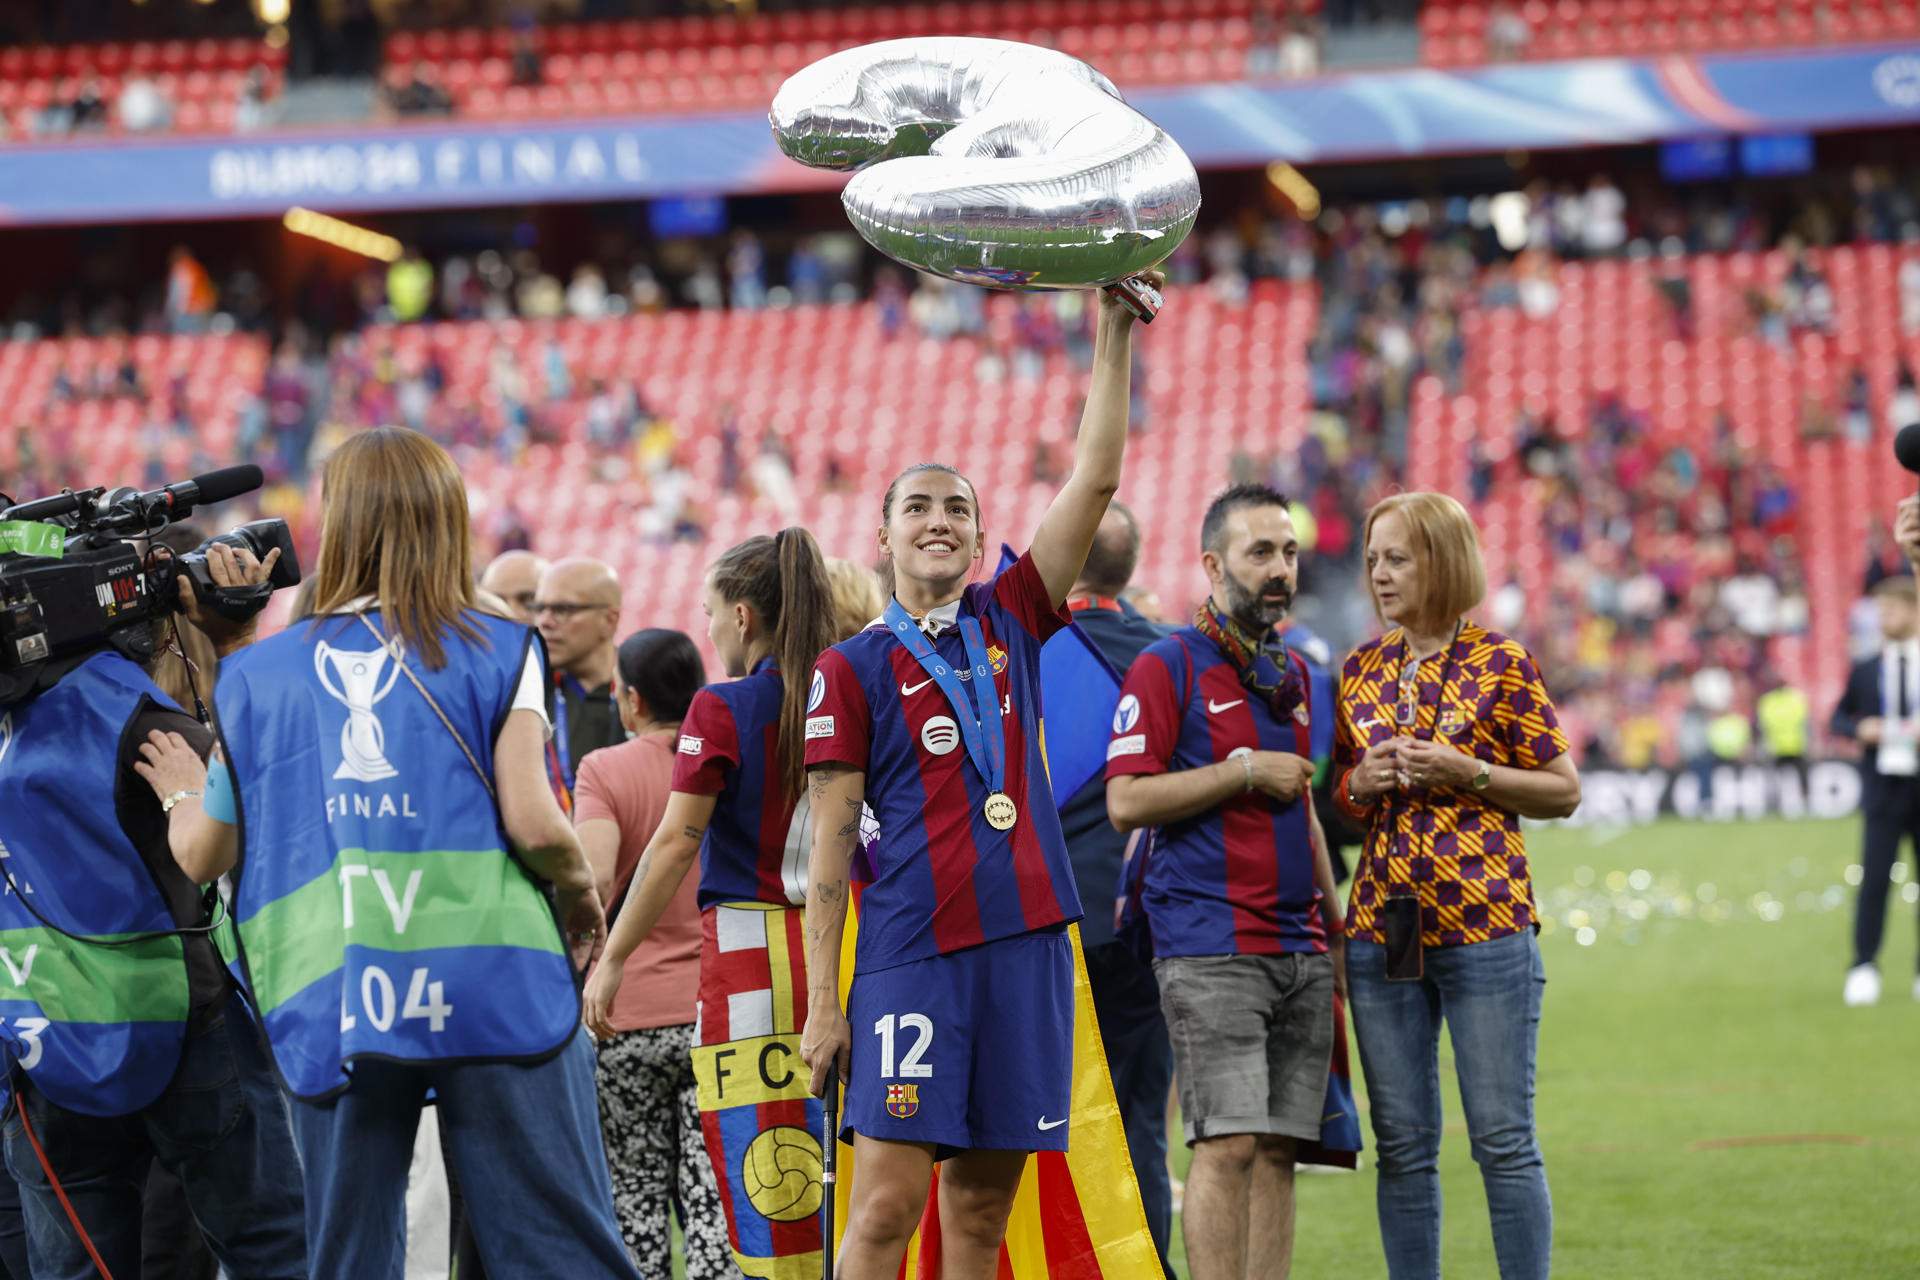 Júbilo del Barça femenino en San Mamés y celebración gloriosa con el orgullo de la afición culé